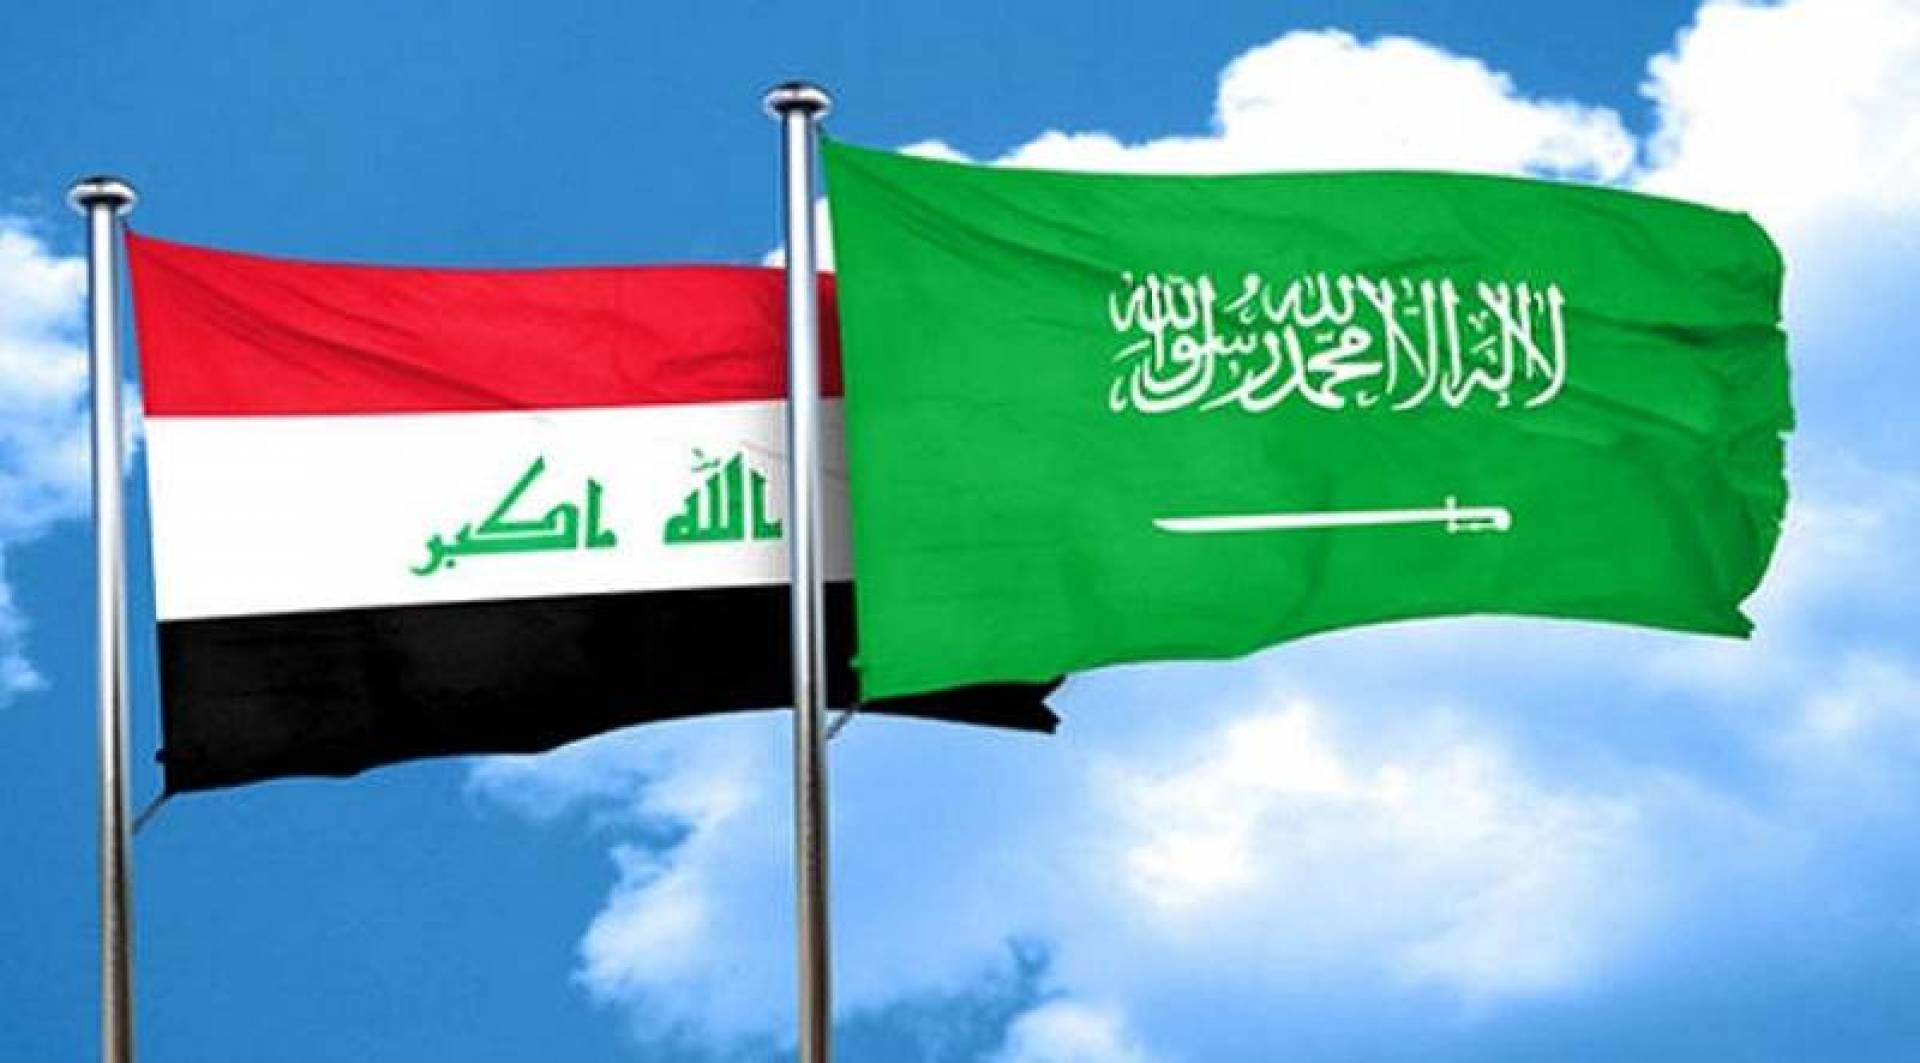 السلطات العراقية تقول انها تتابع اعتقال اثنين من مواطنيها من قبل السعودية